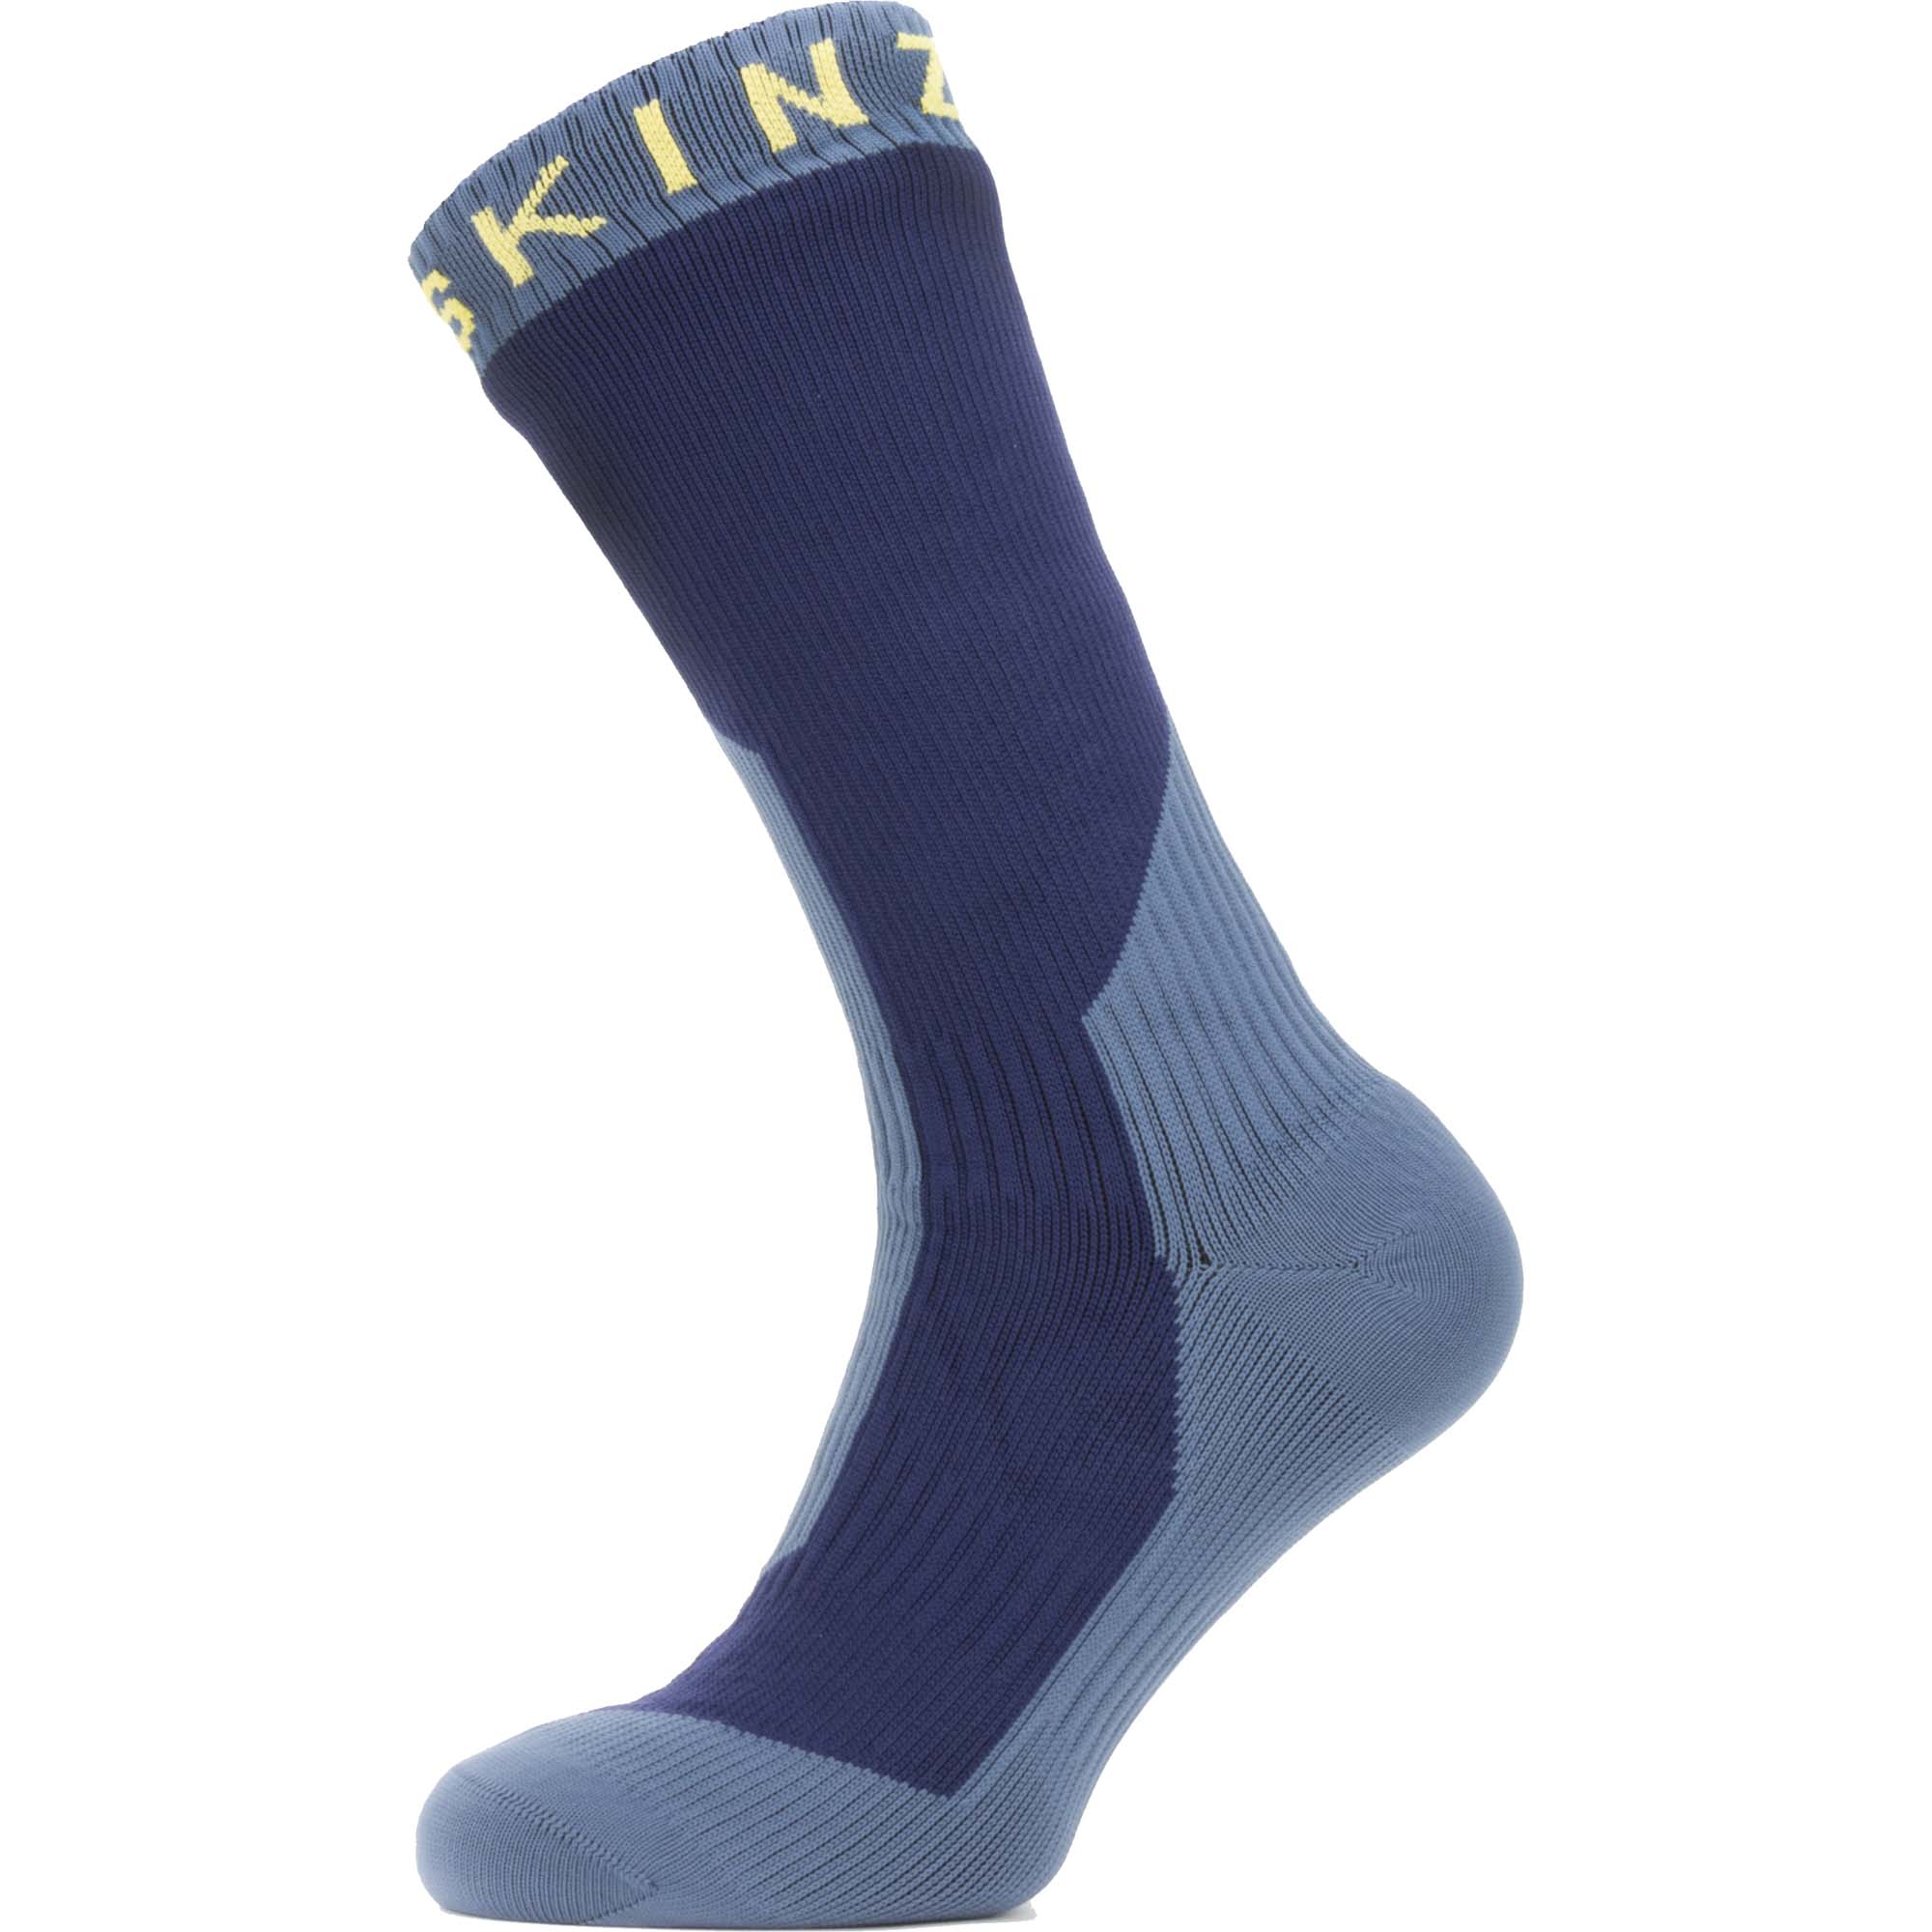 SealSkinz Stanfield Waterproof Mid Length Socks 